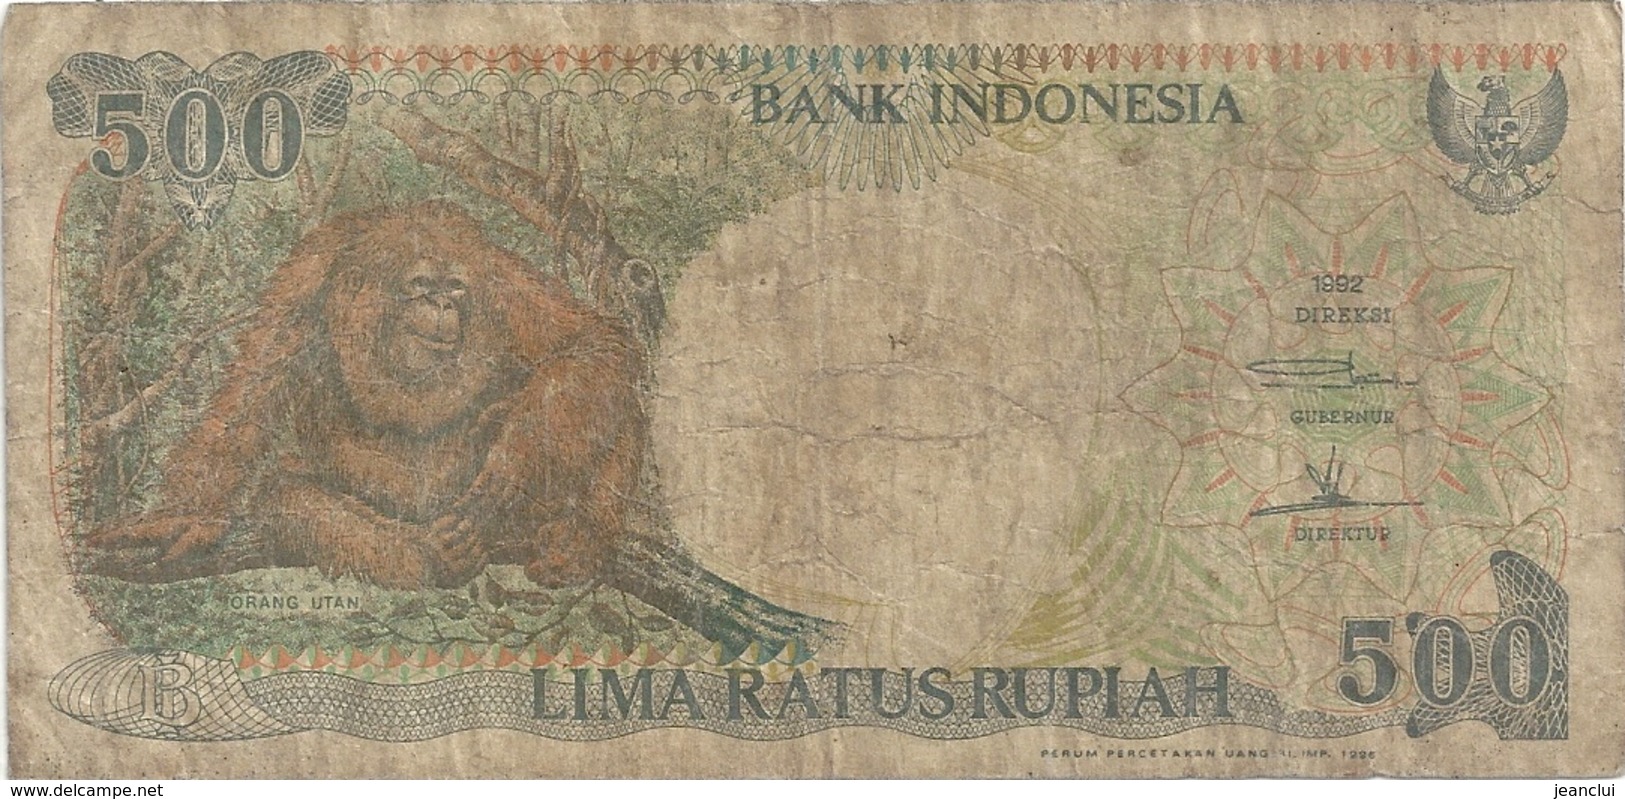 BANK INDONESIA . 500 RUPIAH . 1992 . N° YTK 227523 .  .  2 SCANES - Indonésie